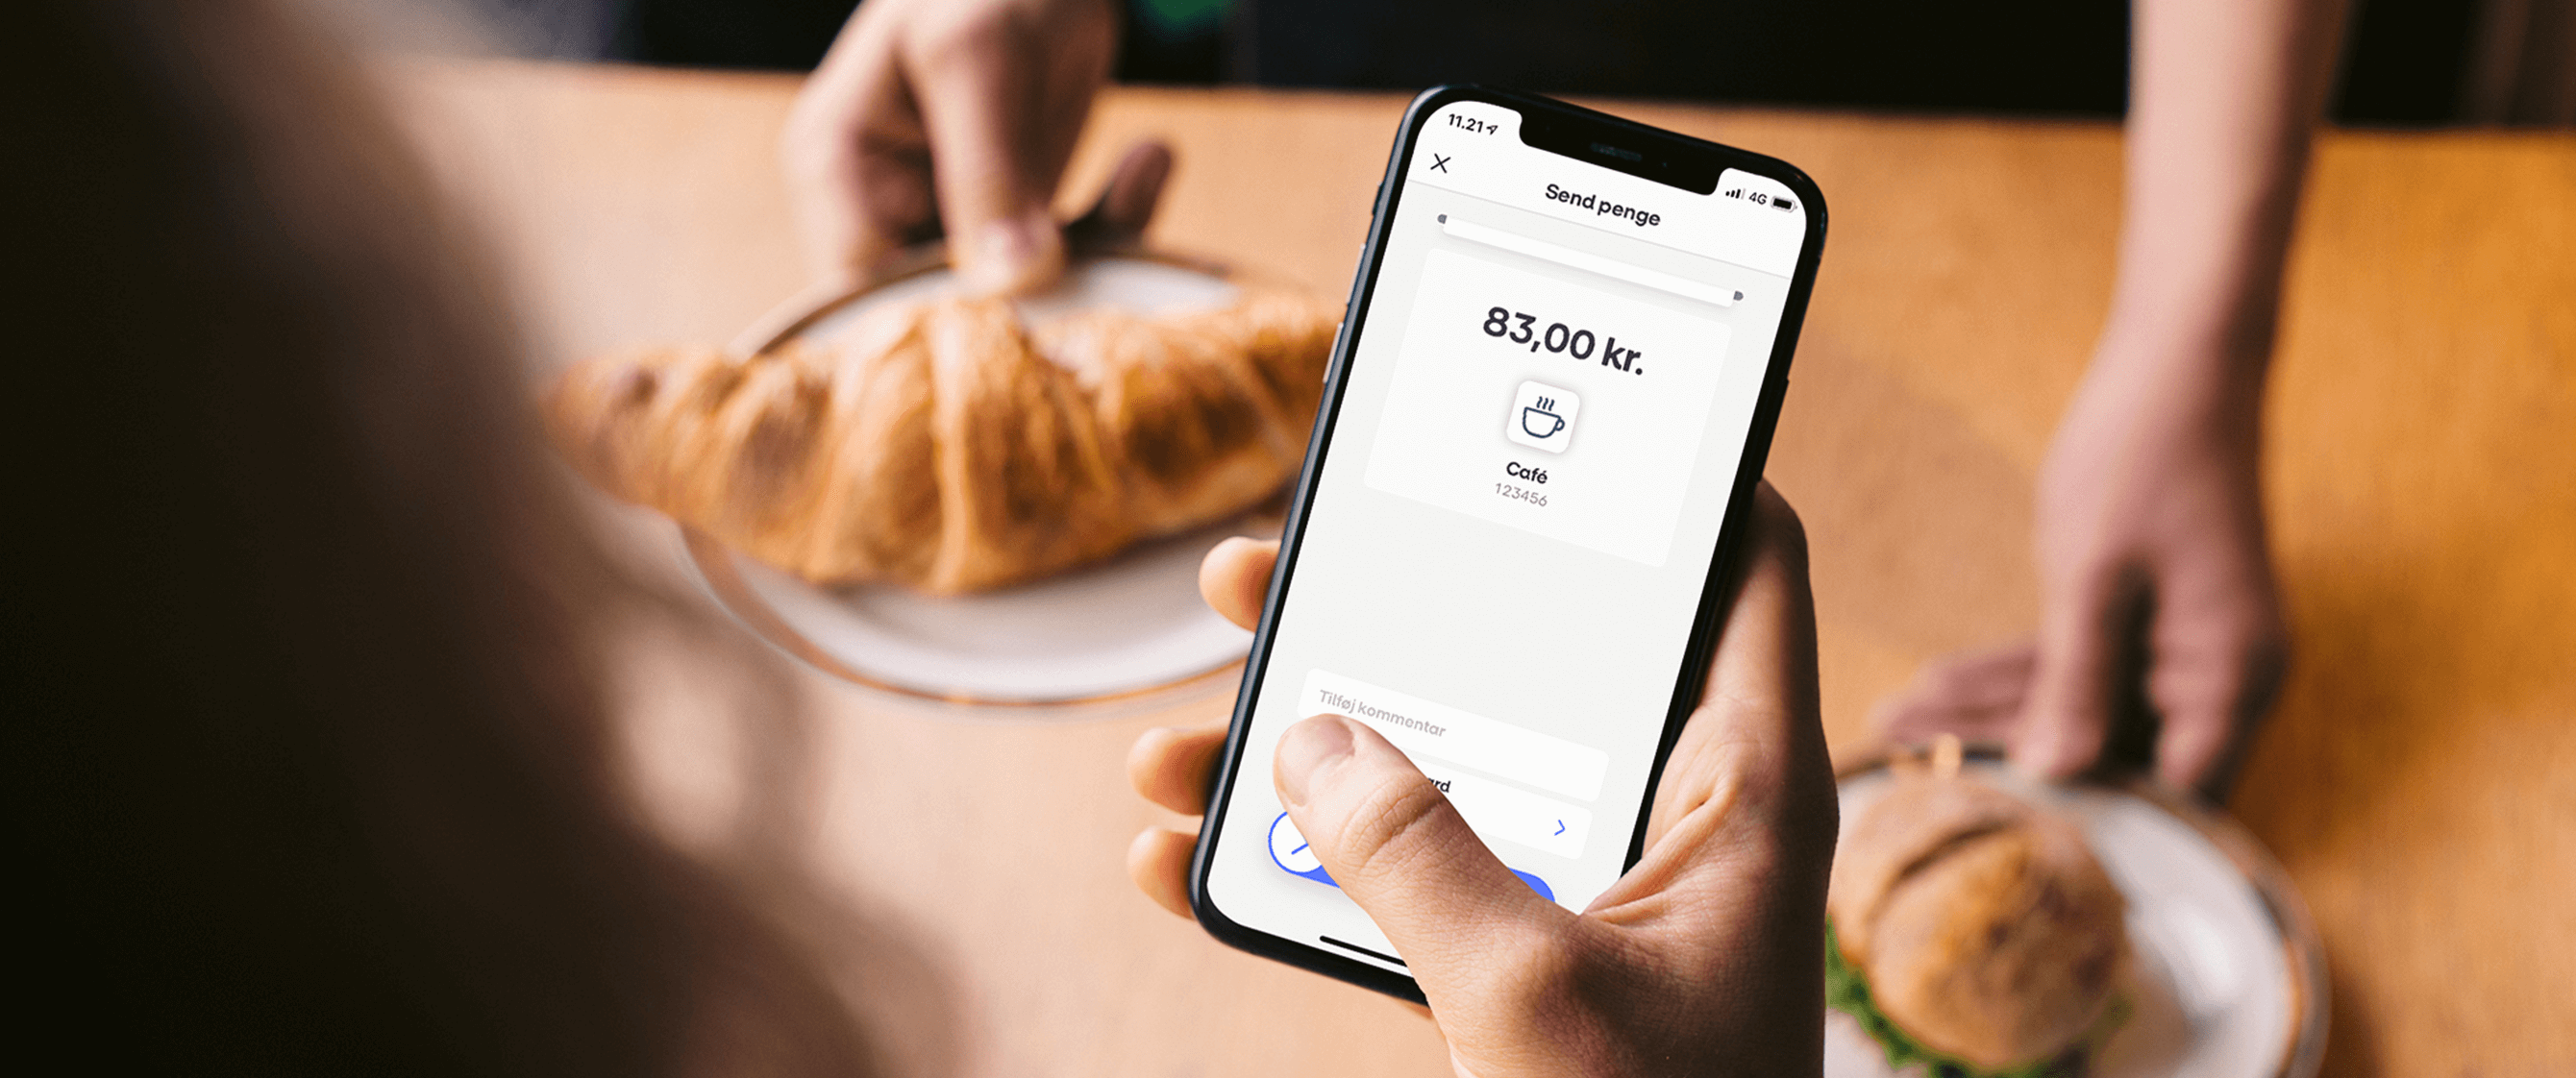 Billedet viser en betaling med MobilePay MyShop på en café